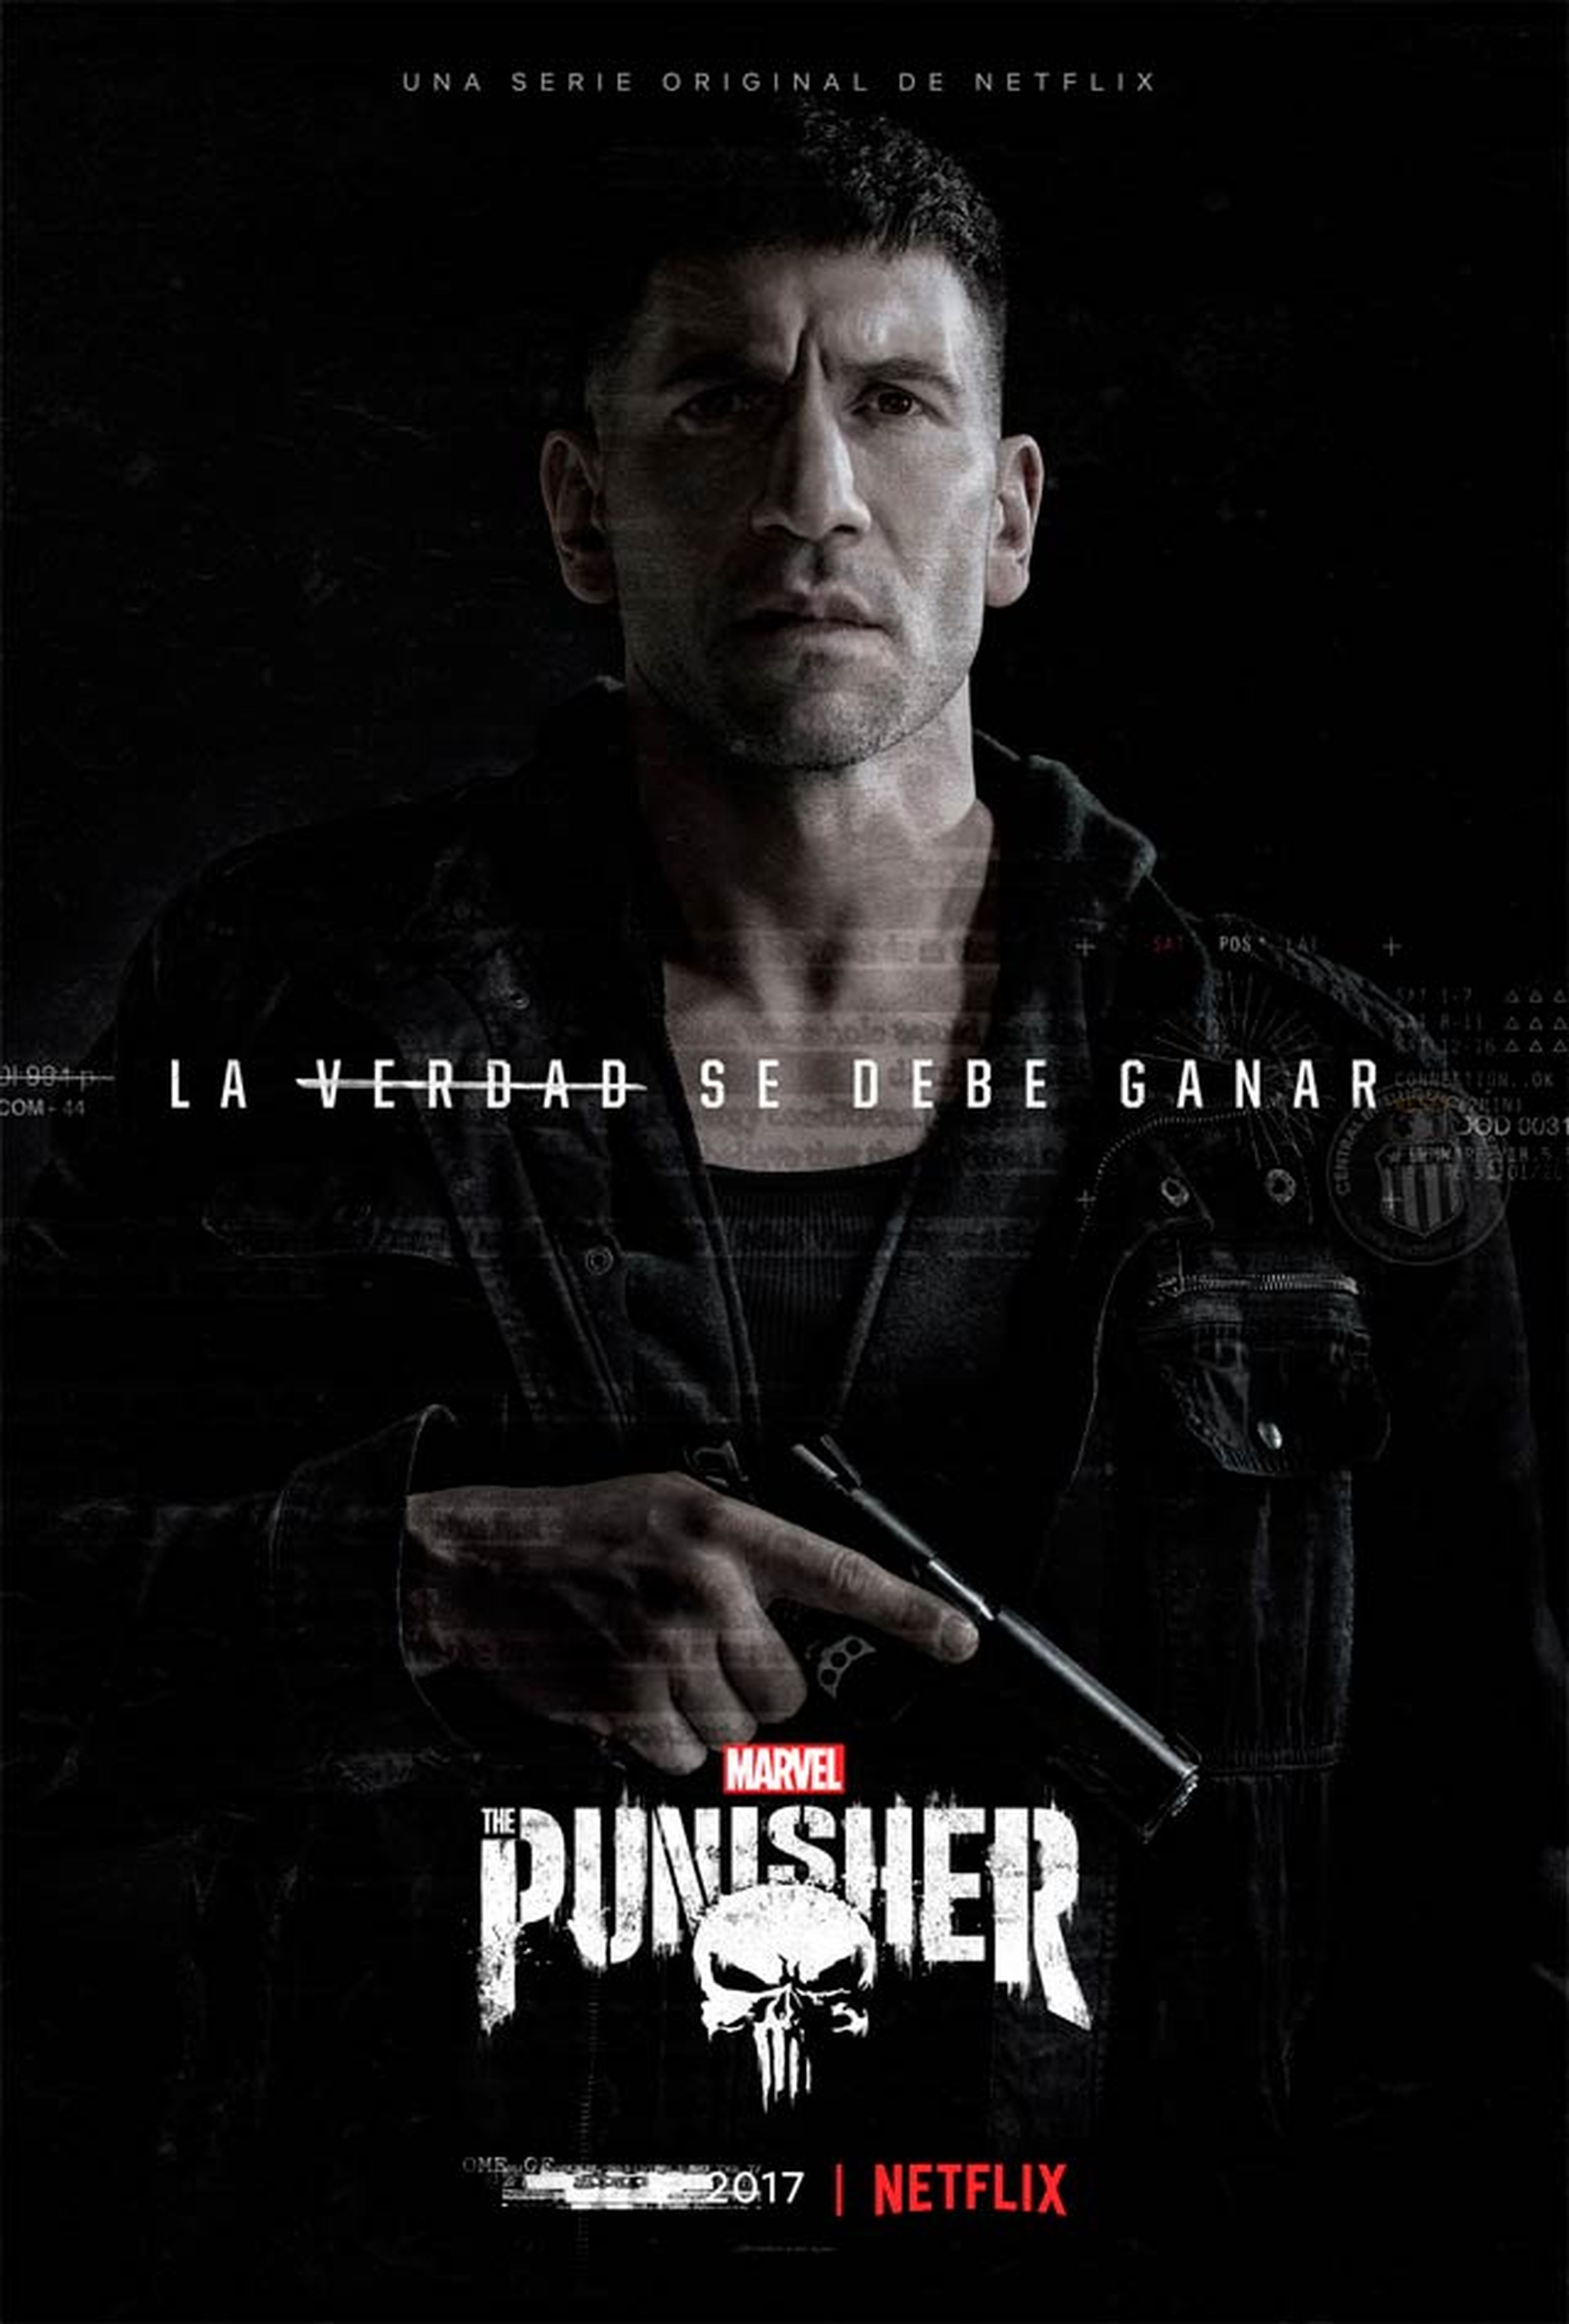 The Punisher: póster oficial en español de la serie de Netflix